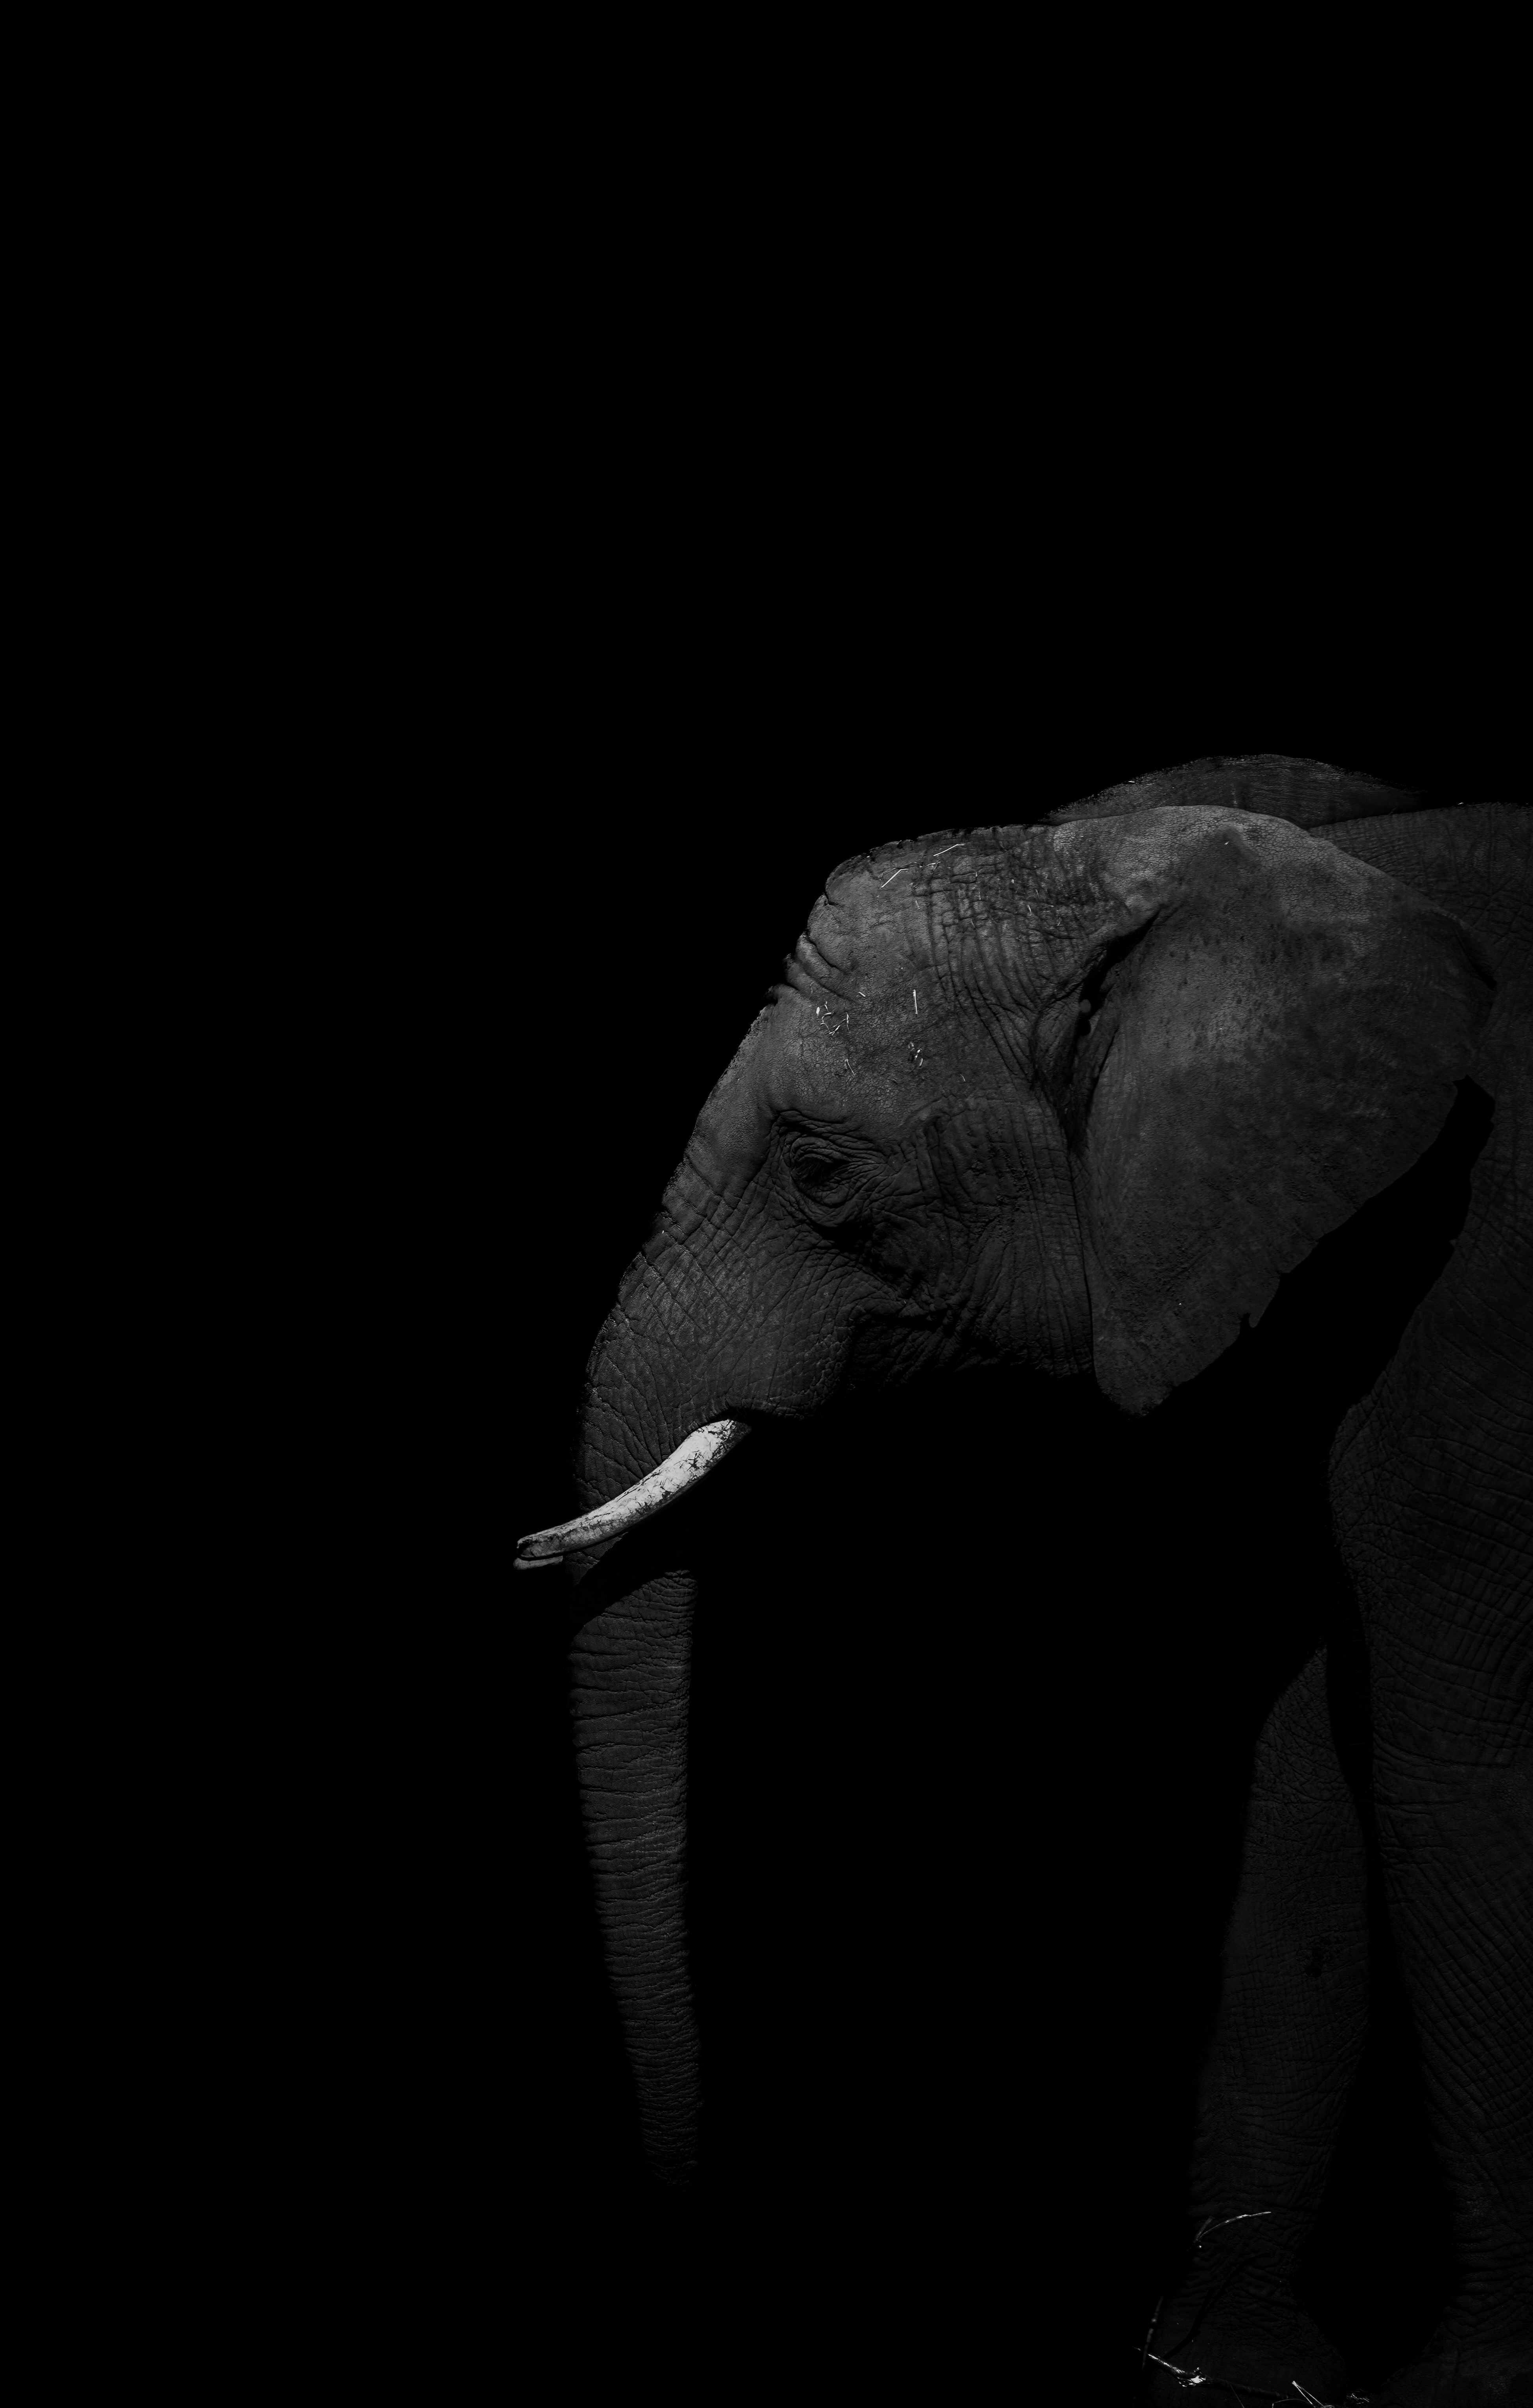 A black and white photo of an elephant - Elephant